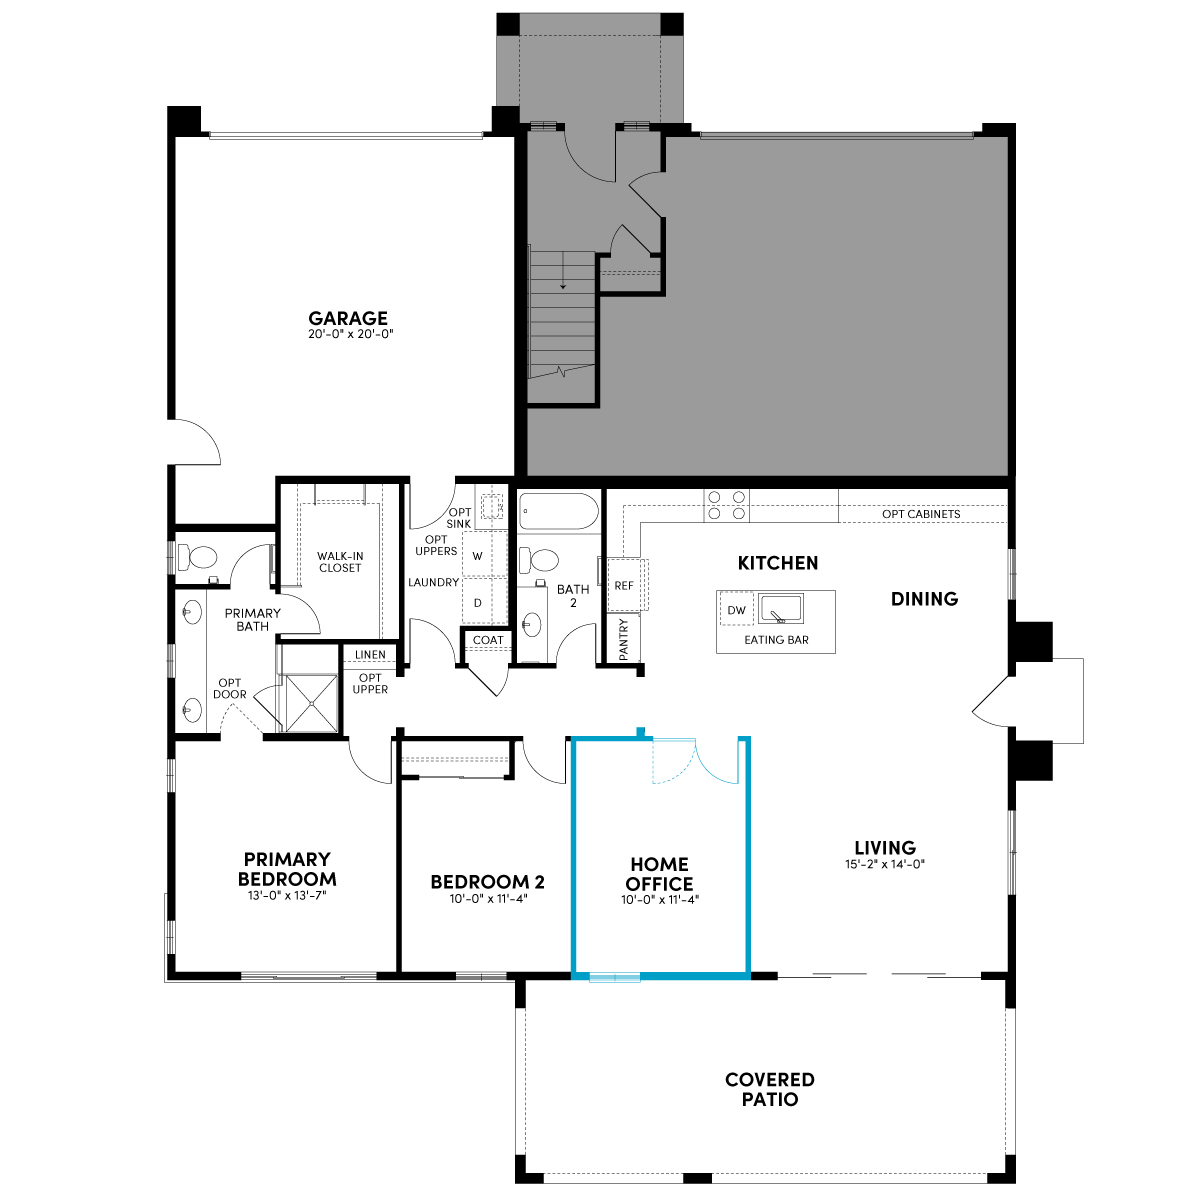 Lakeside - Plan 1 - First Floor - Optional Home Office | OneLake